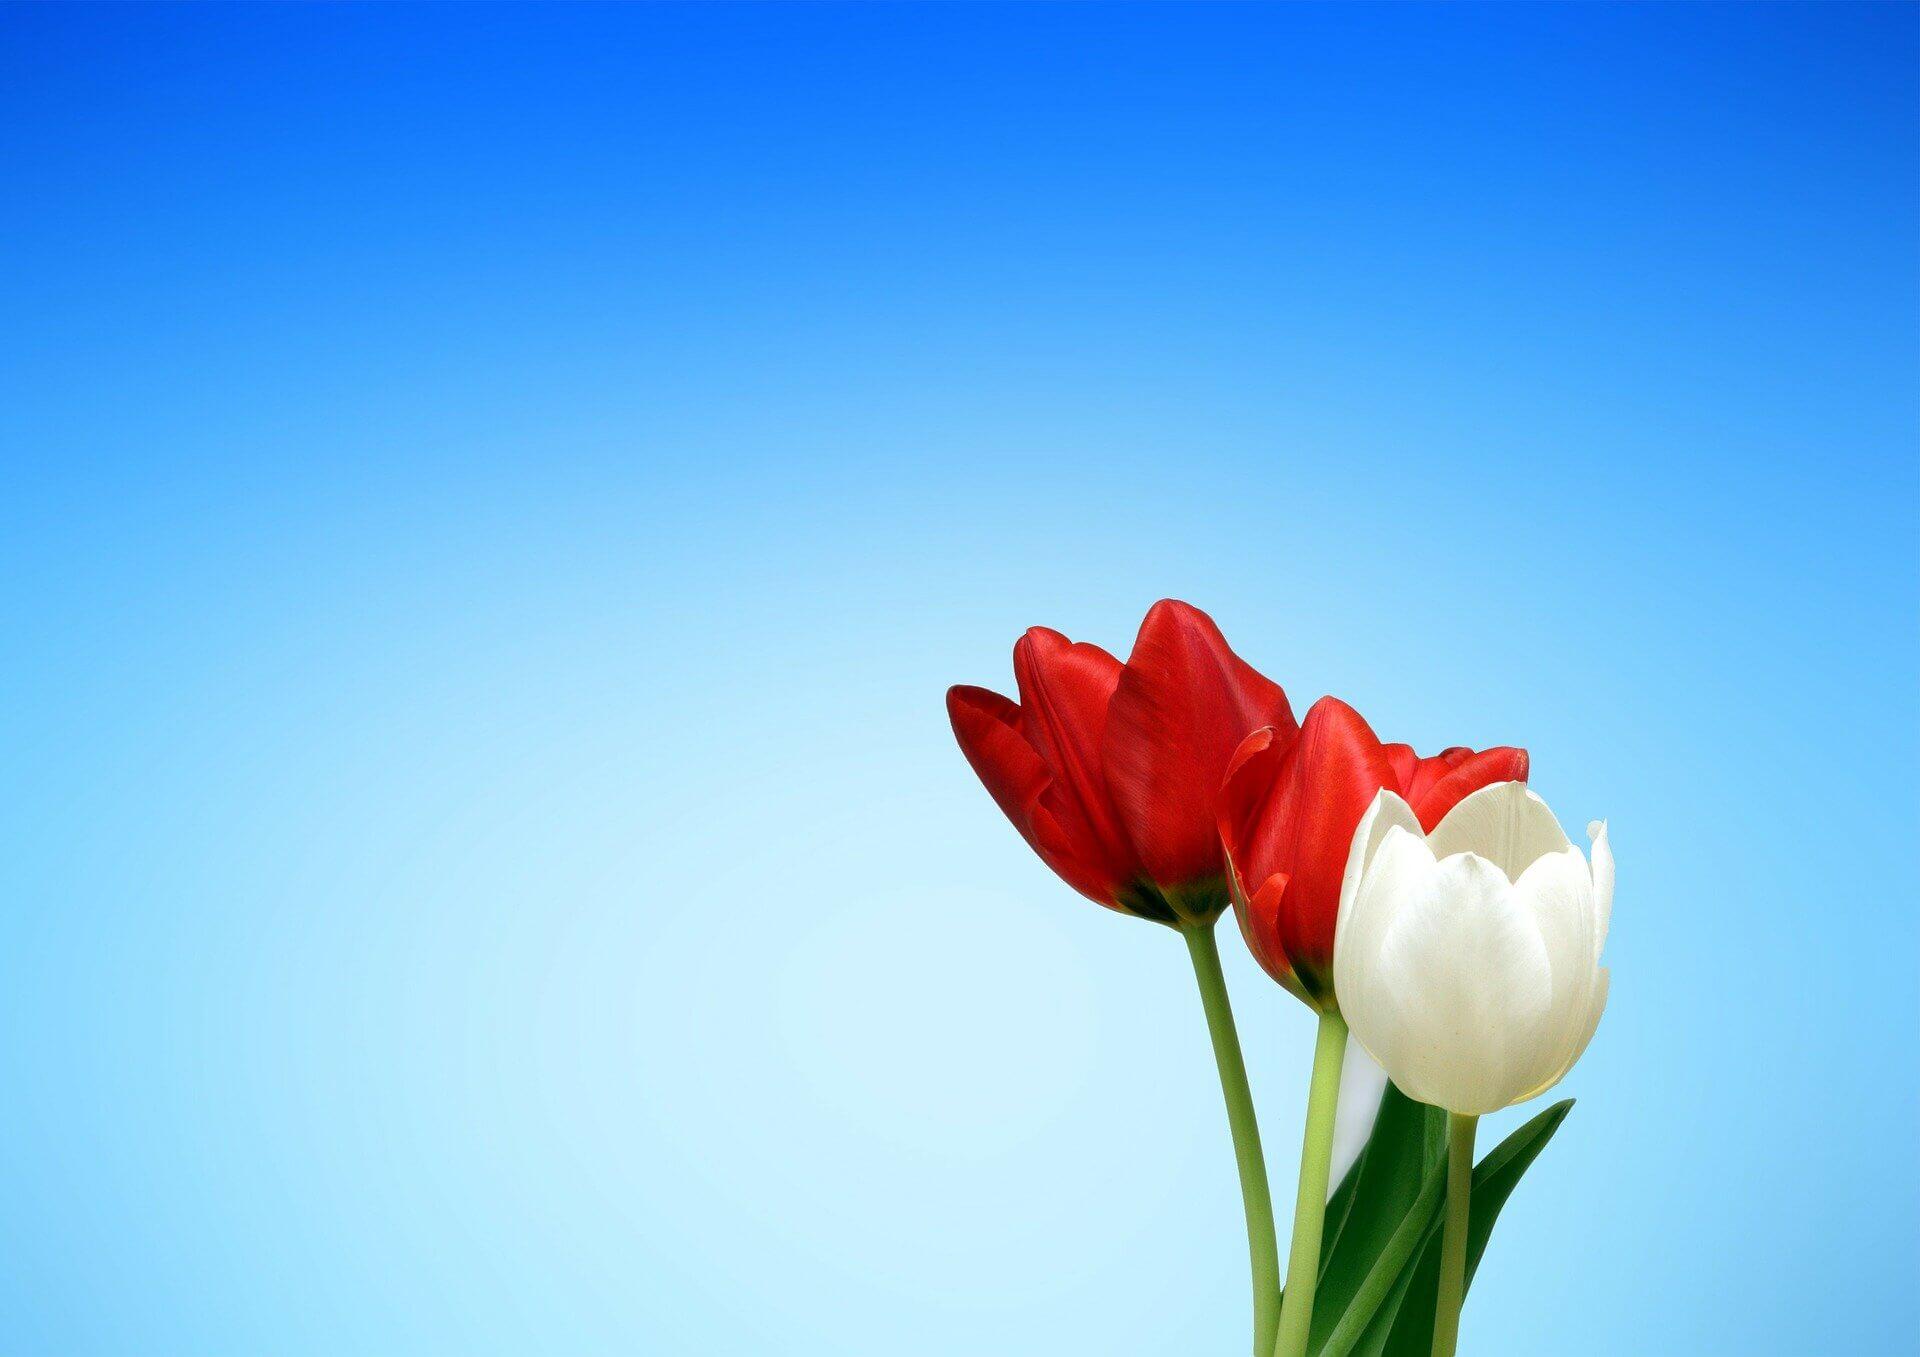 Tulpen vor blauem Hintergrund: Bildquelle: Pixabay